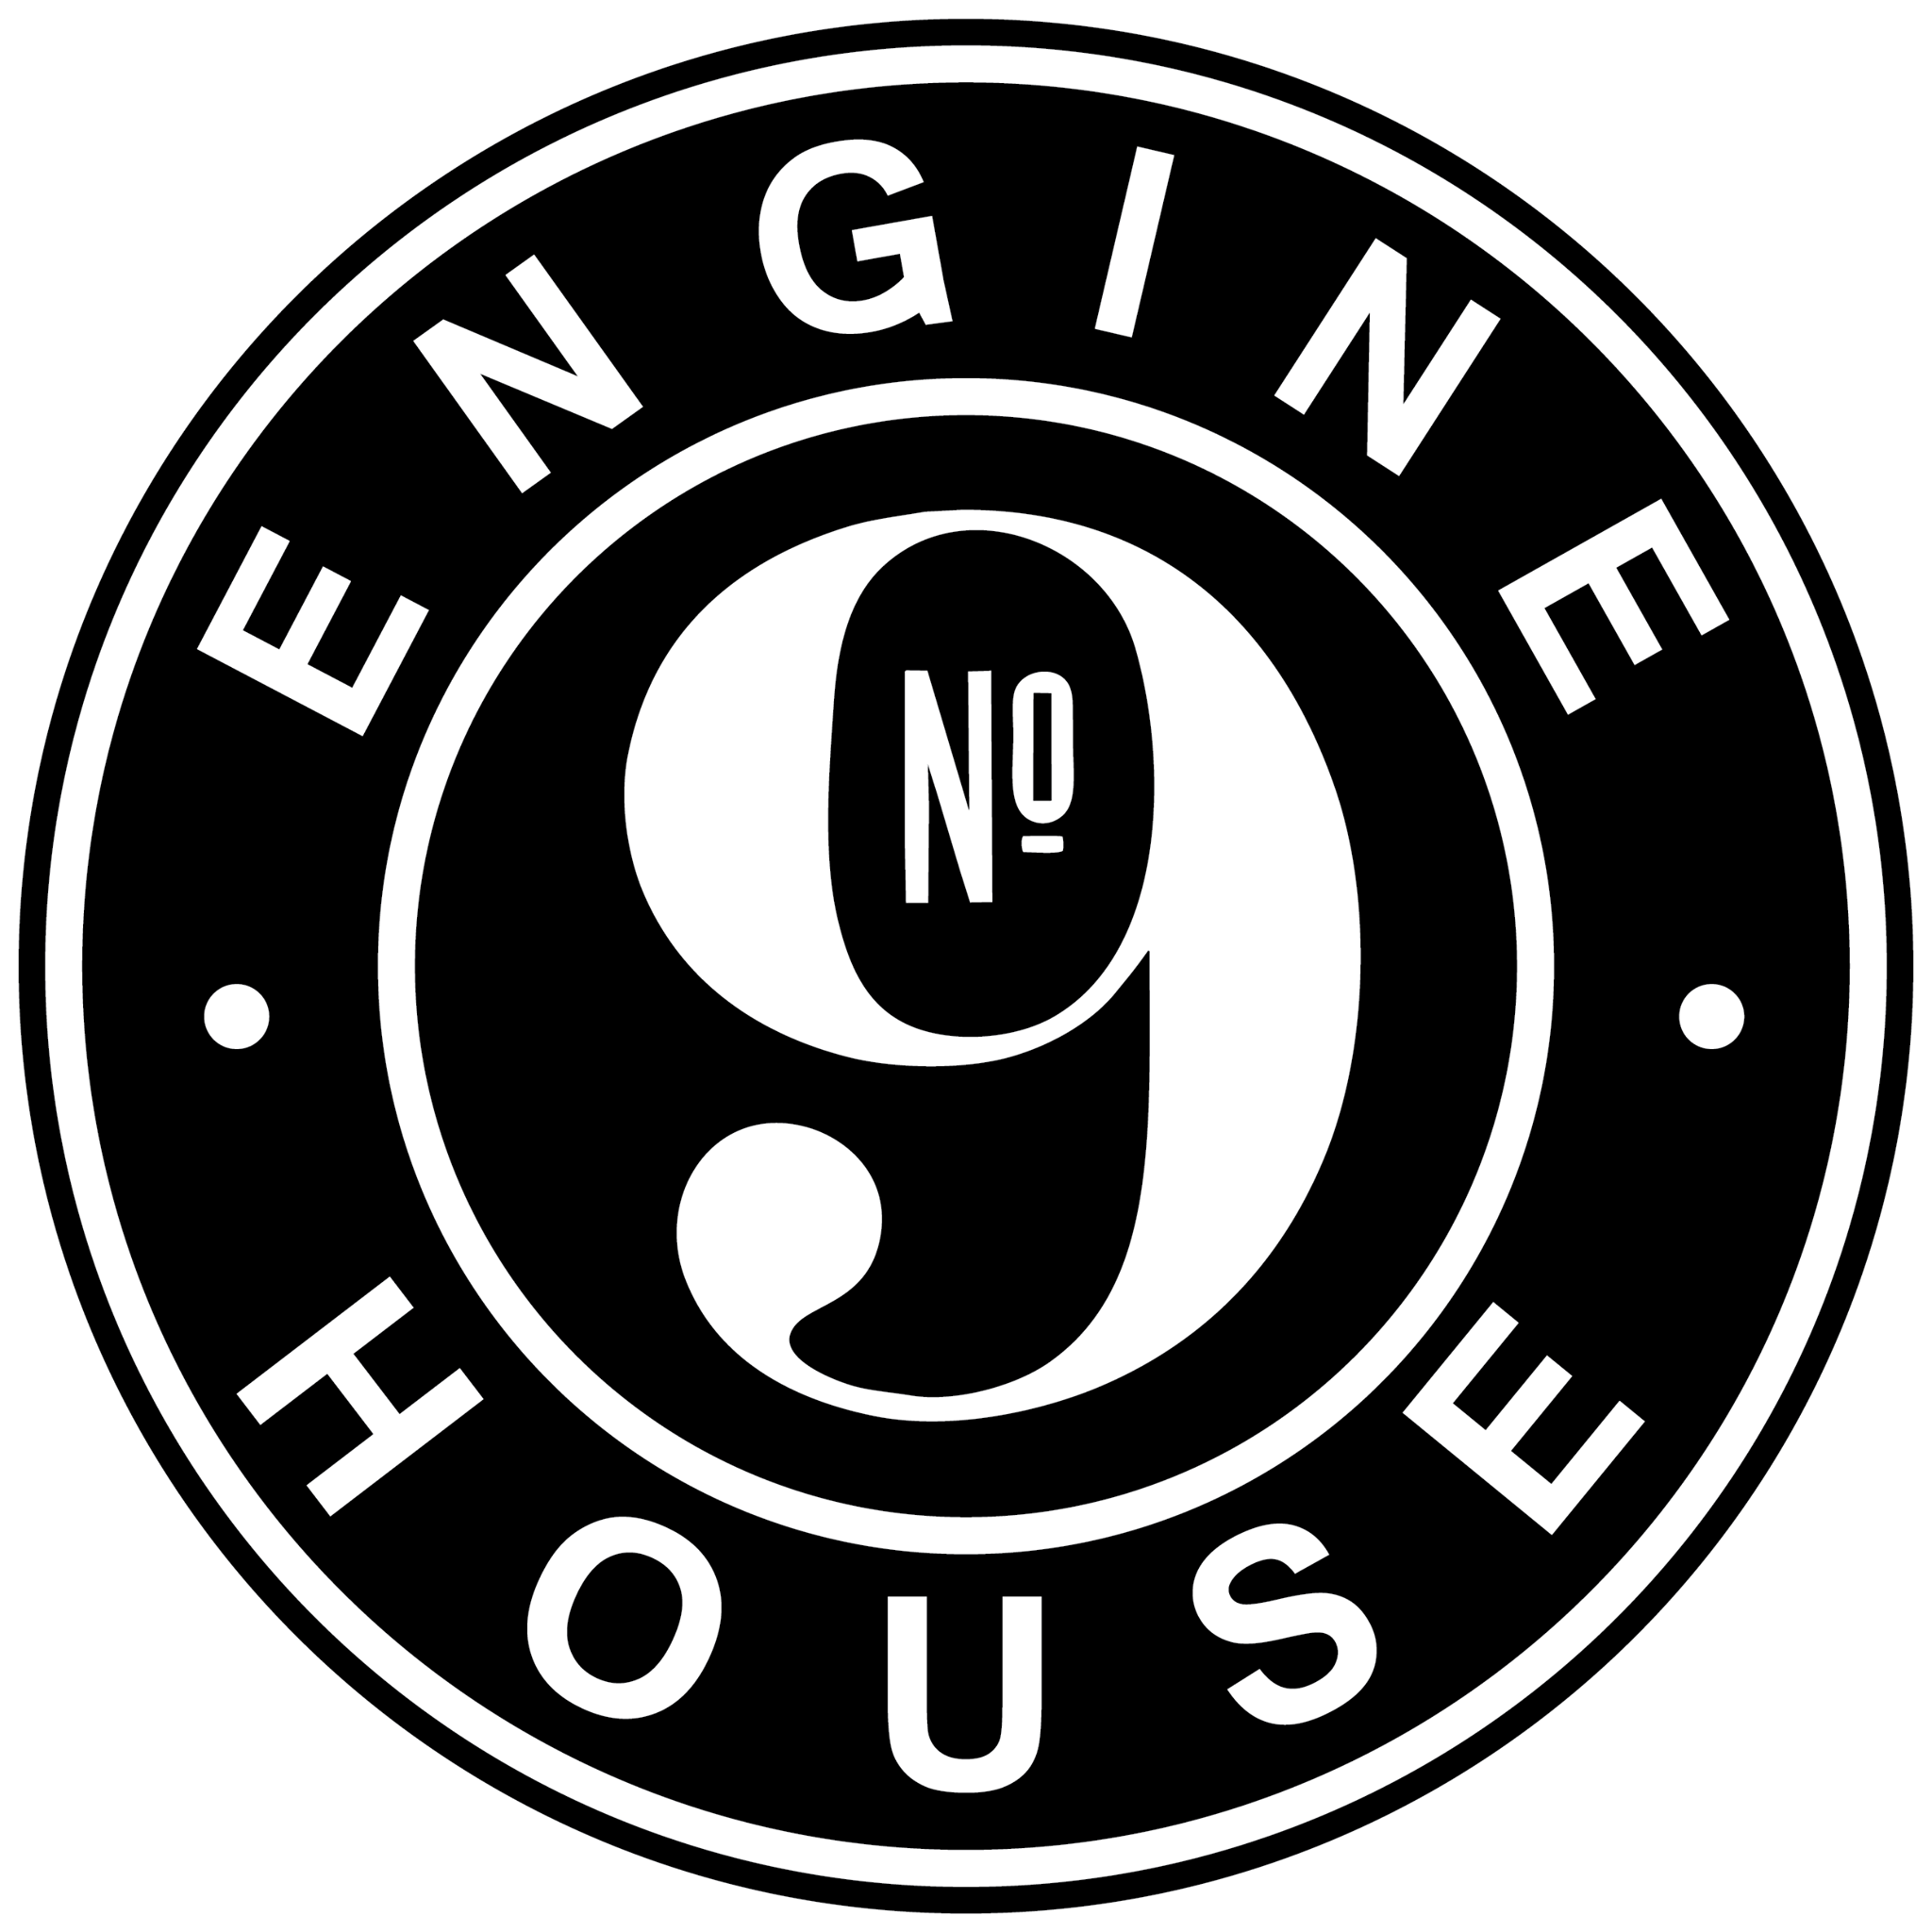 Business logo of Engine House No. 9